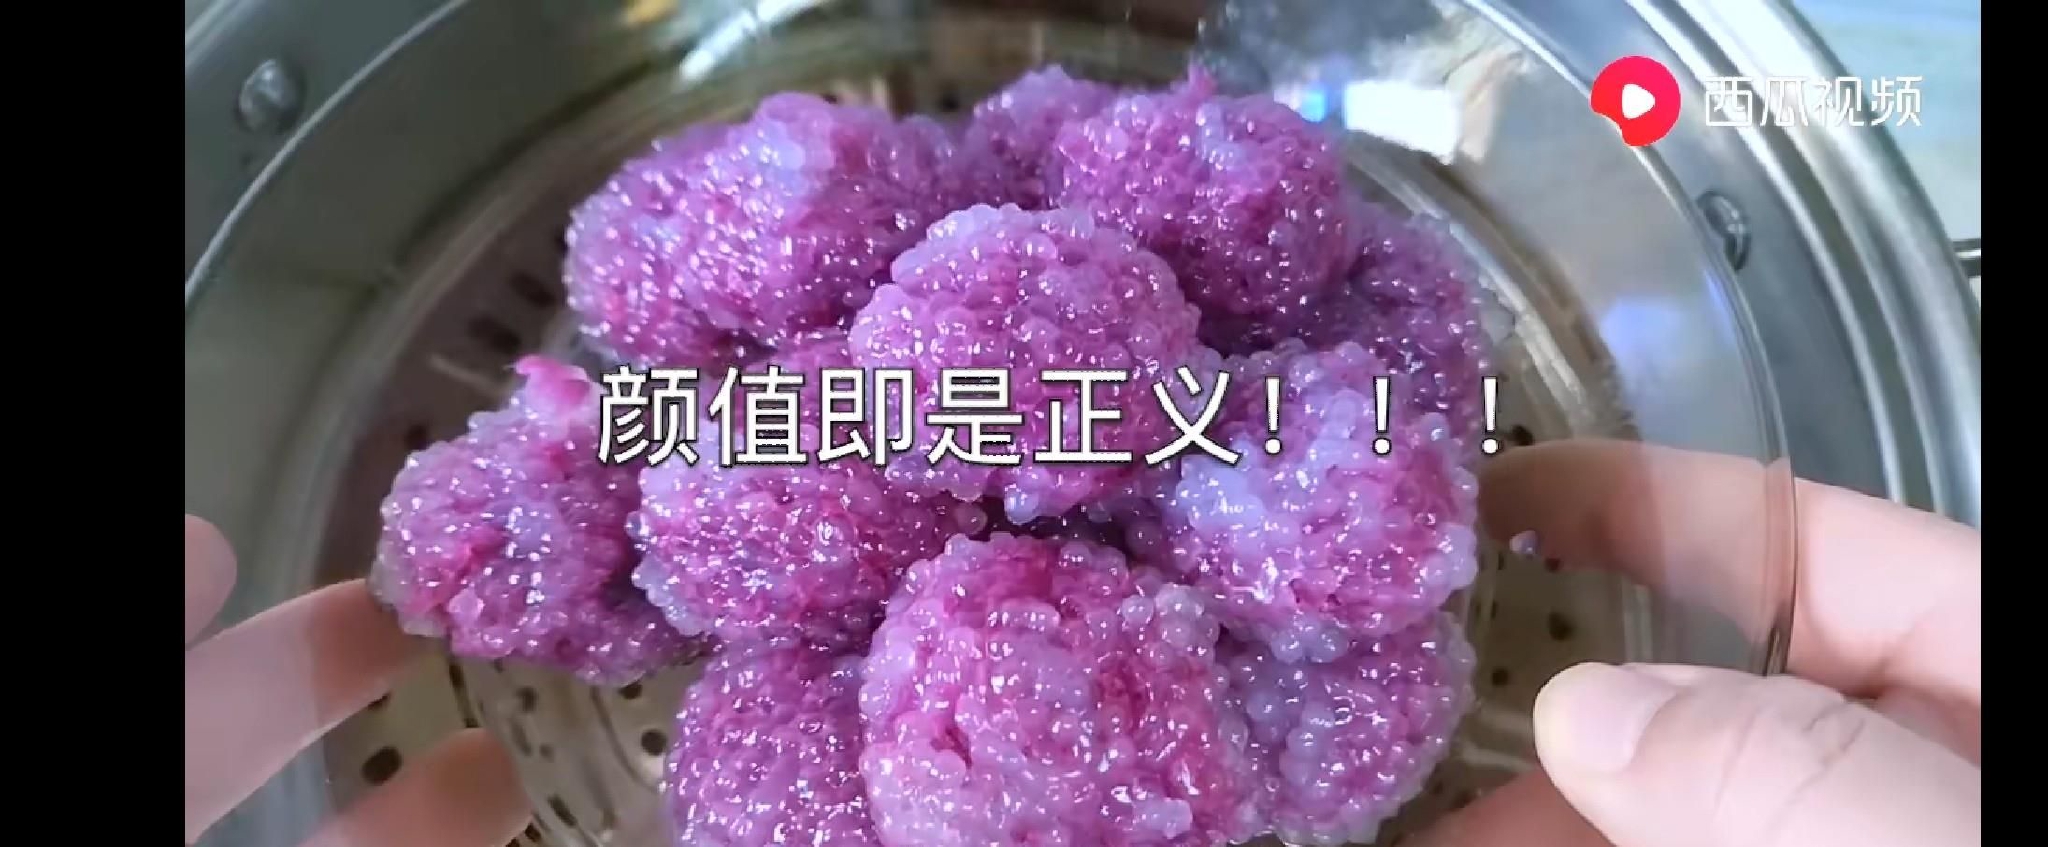 椰汁紫米露